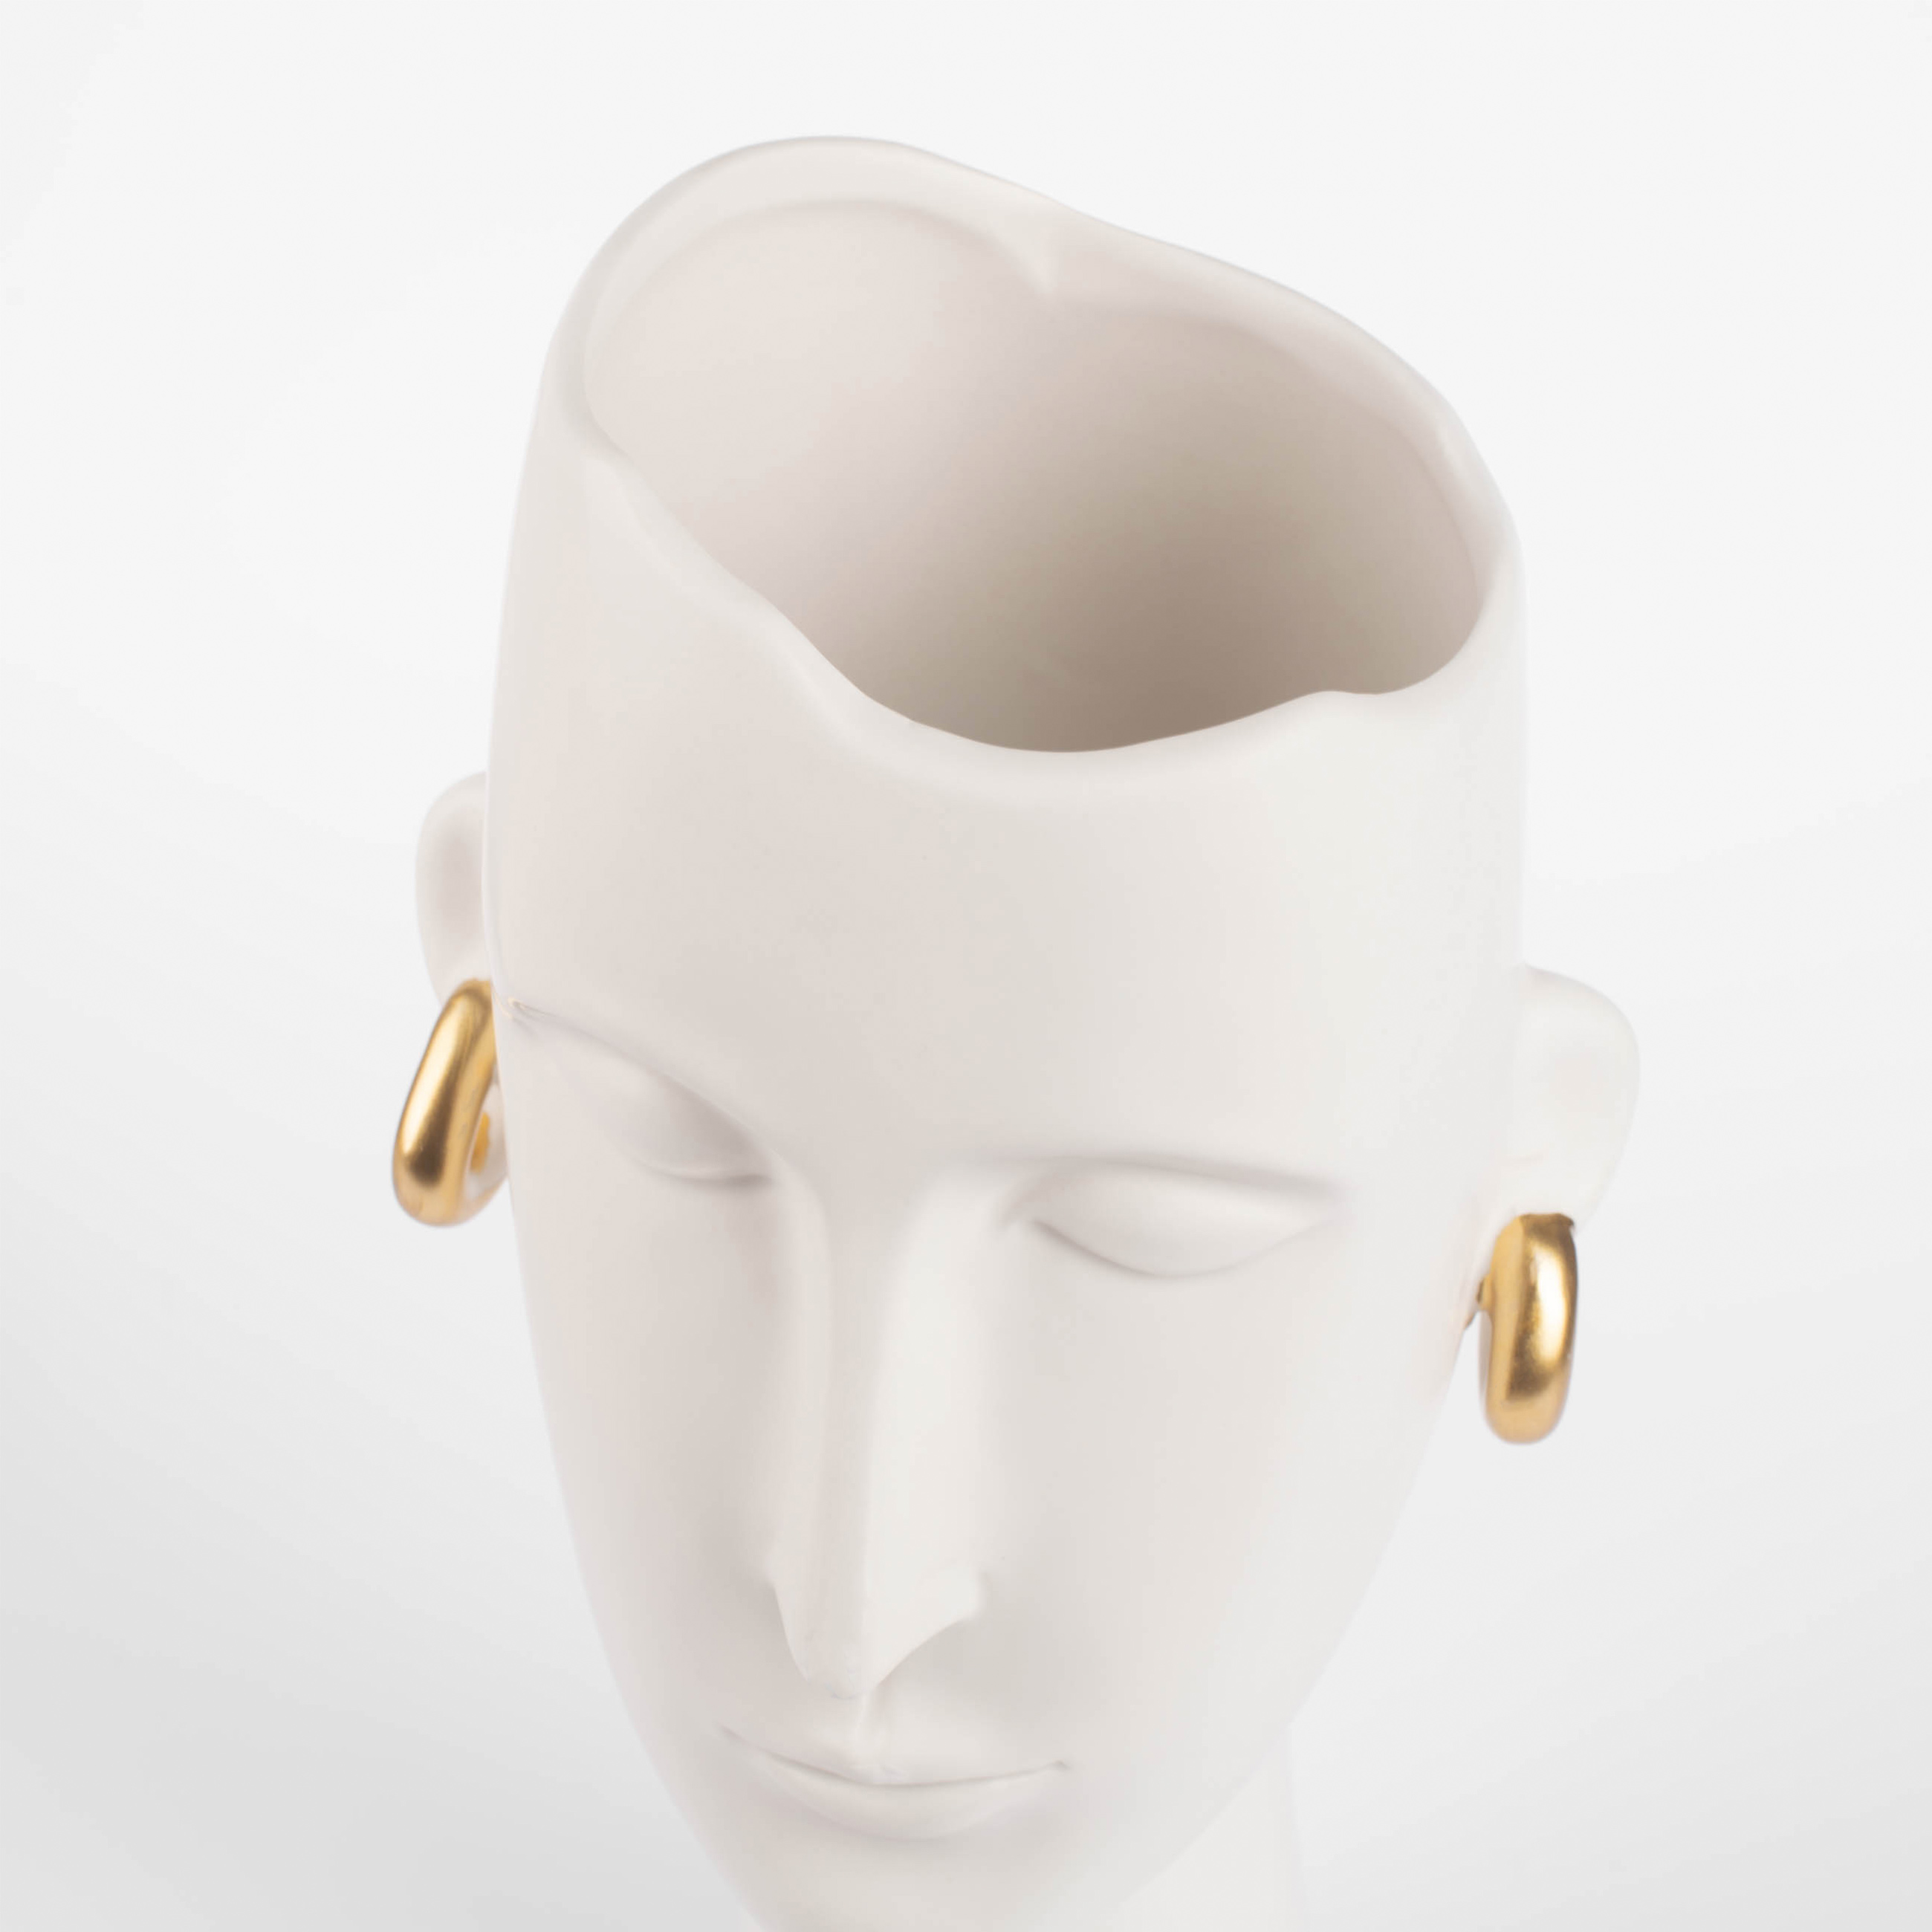 Ваза для цветов, 33 см, декоративная, керамика, белая, Девушка в золотистых сережках, Face изображение № 4